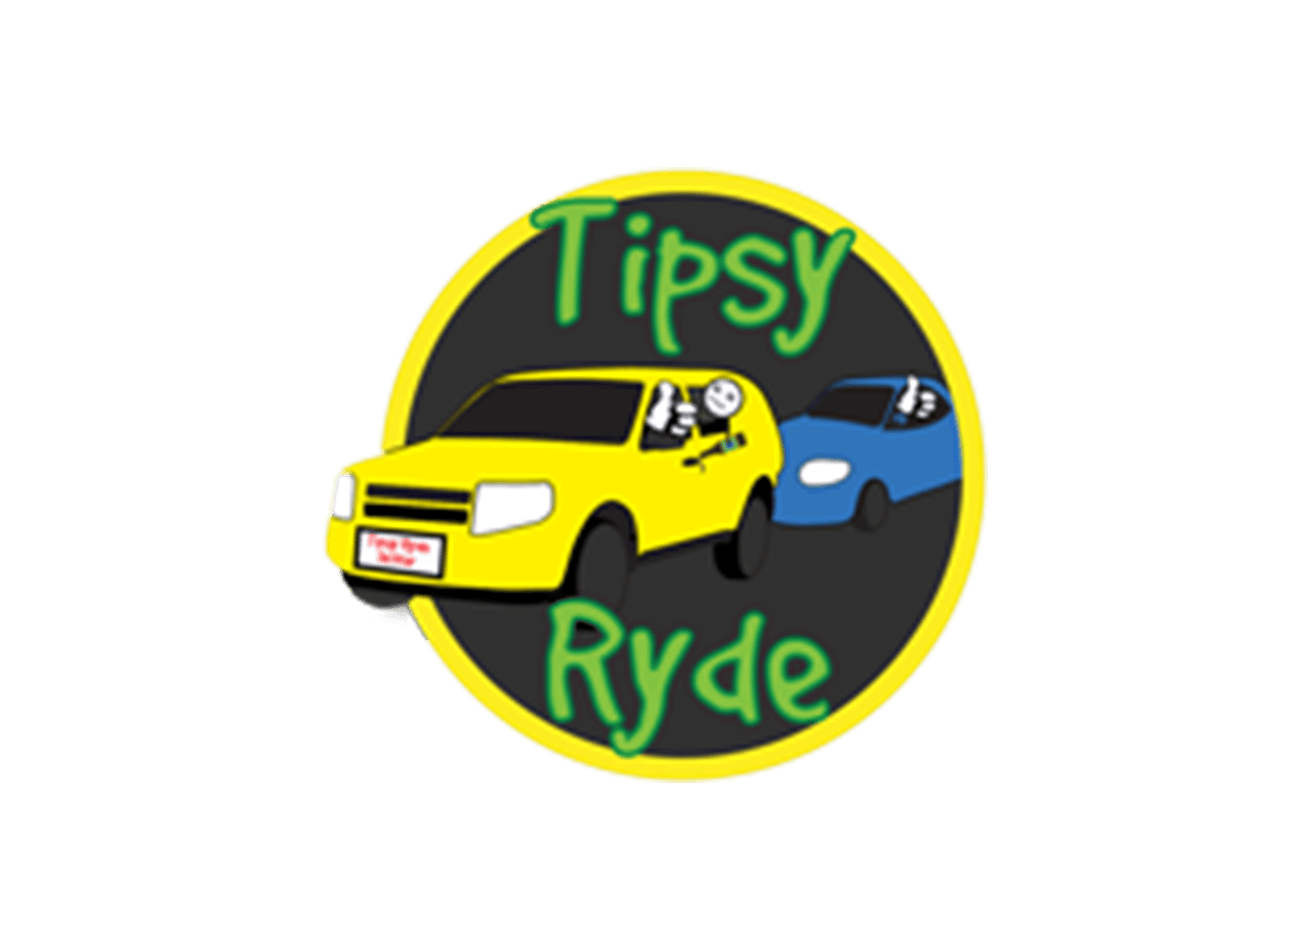 Tipsyryde Driver Assist e consegna a domicilio